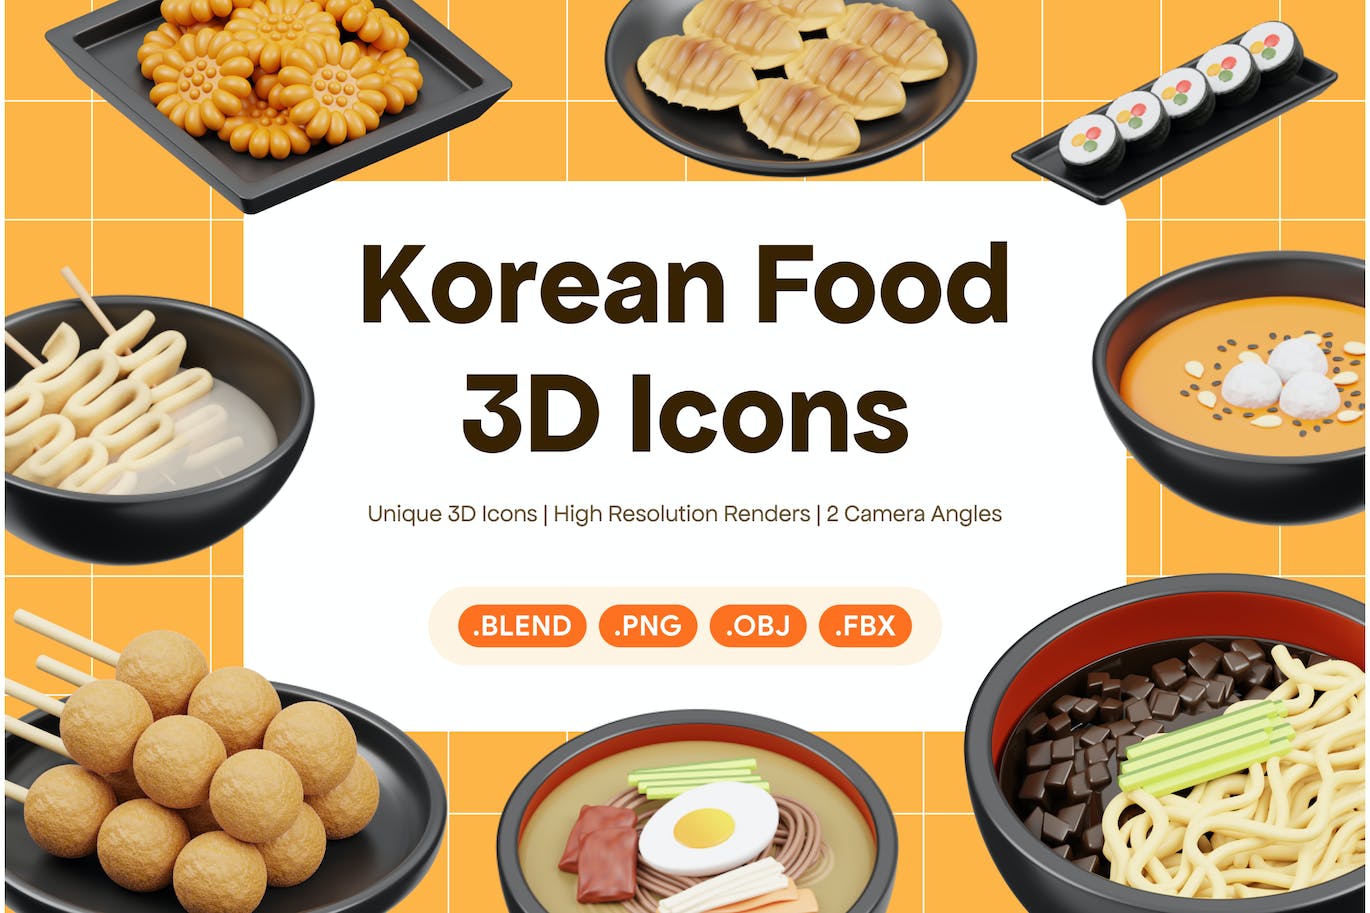 韩国食品3D图标 (PNG,Blend,OBJ,FBX)